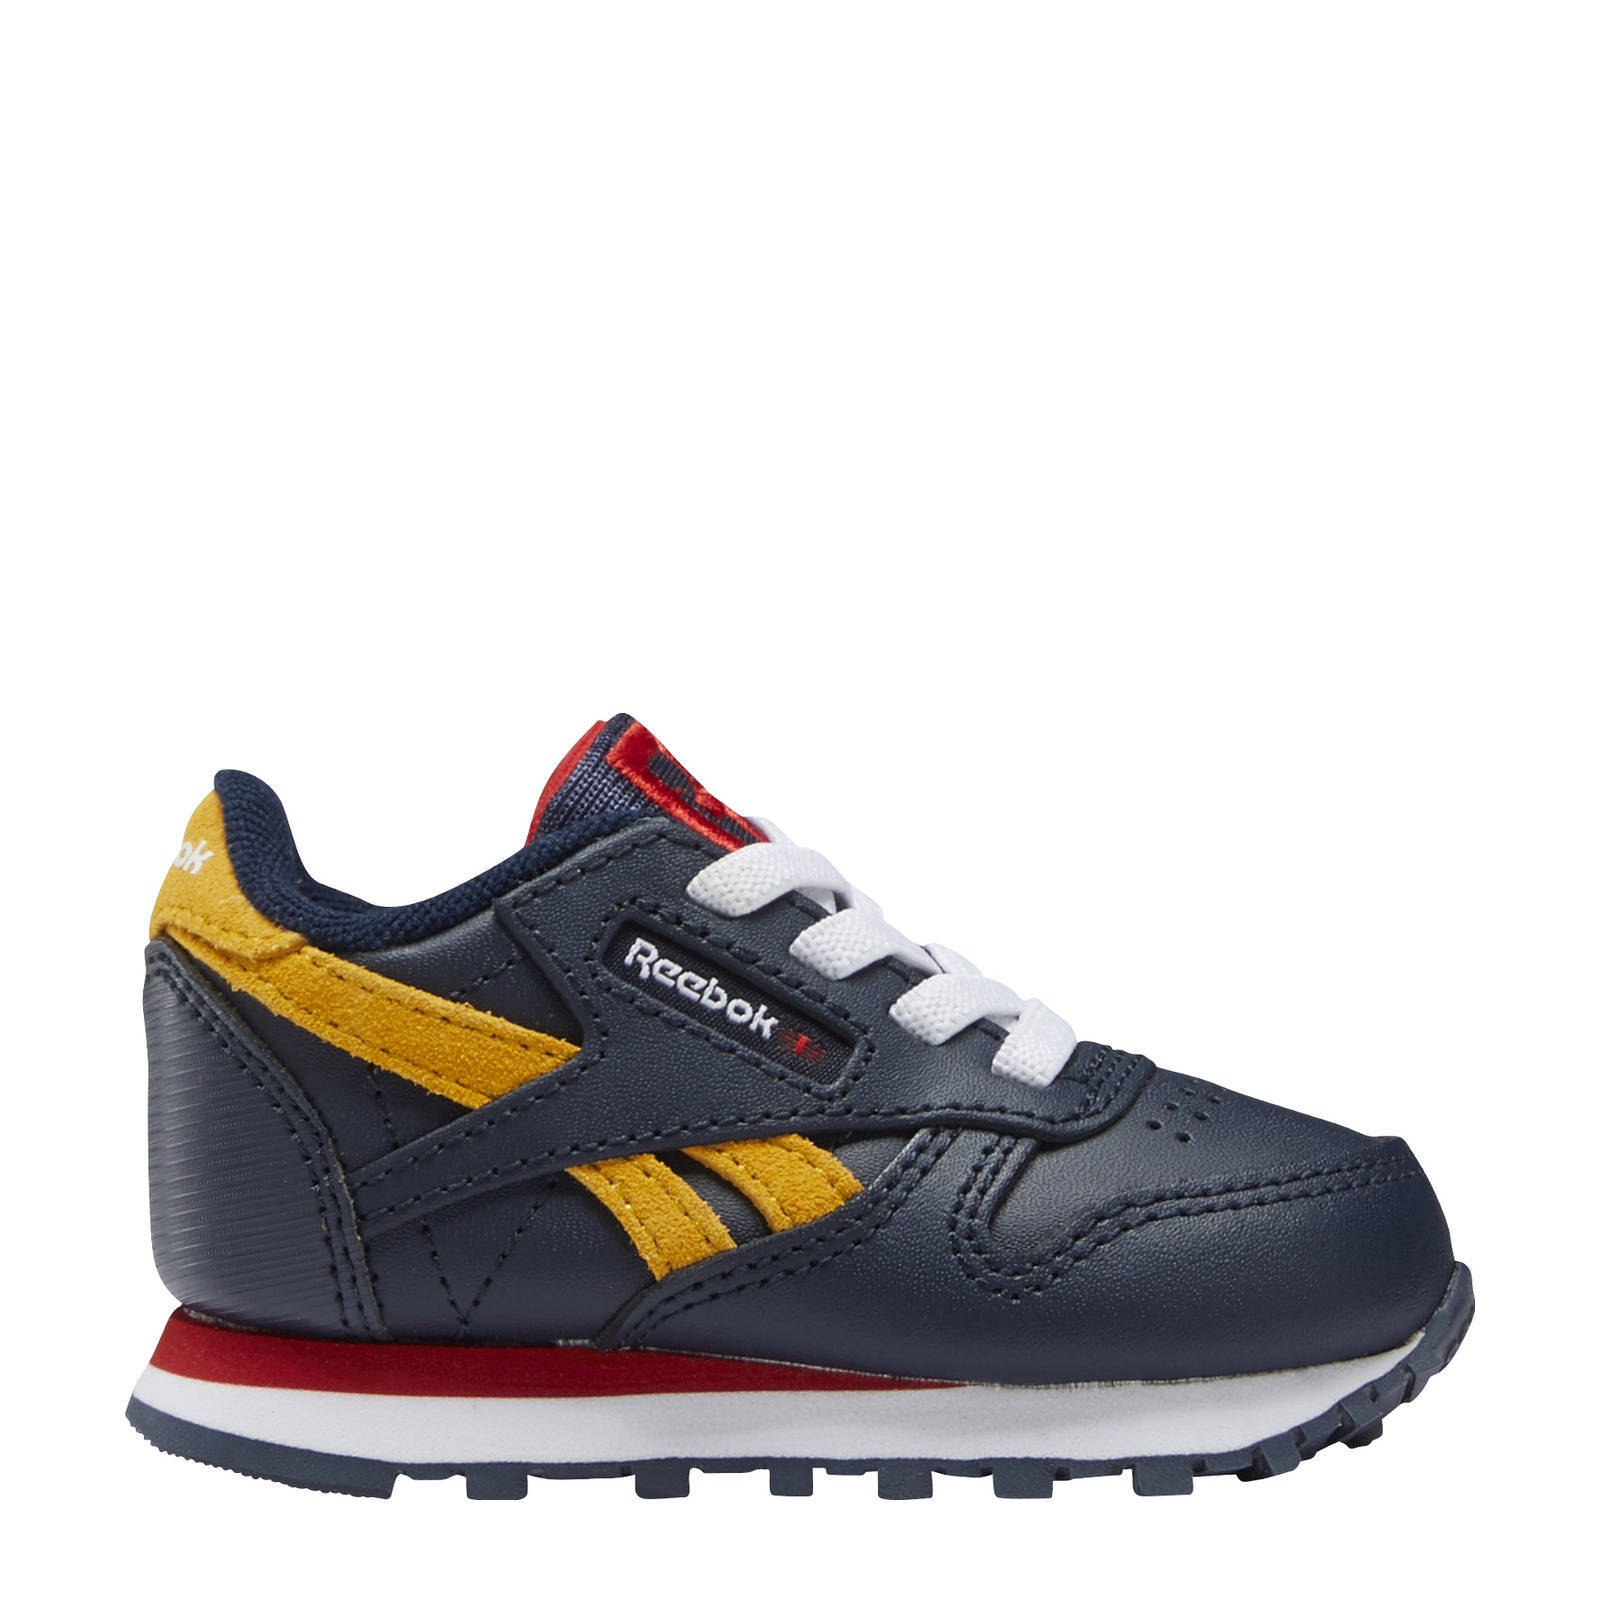 Reebok classic leather schoenen Vector Navy/Vector Red/Collegiate Gold online kopen